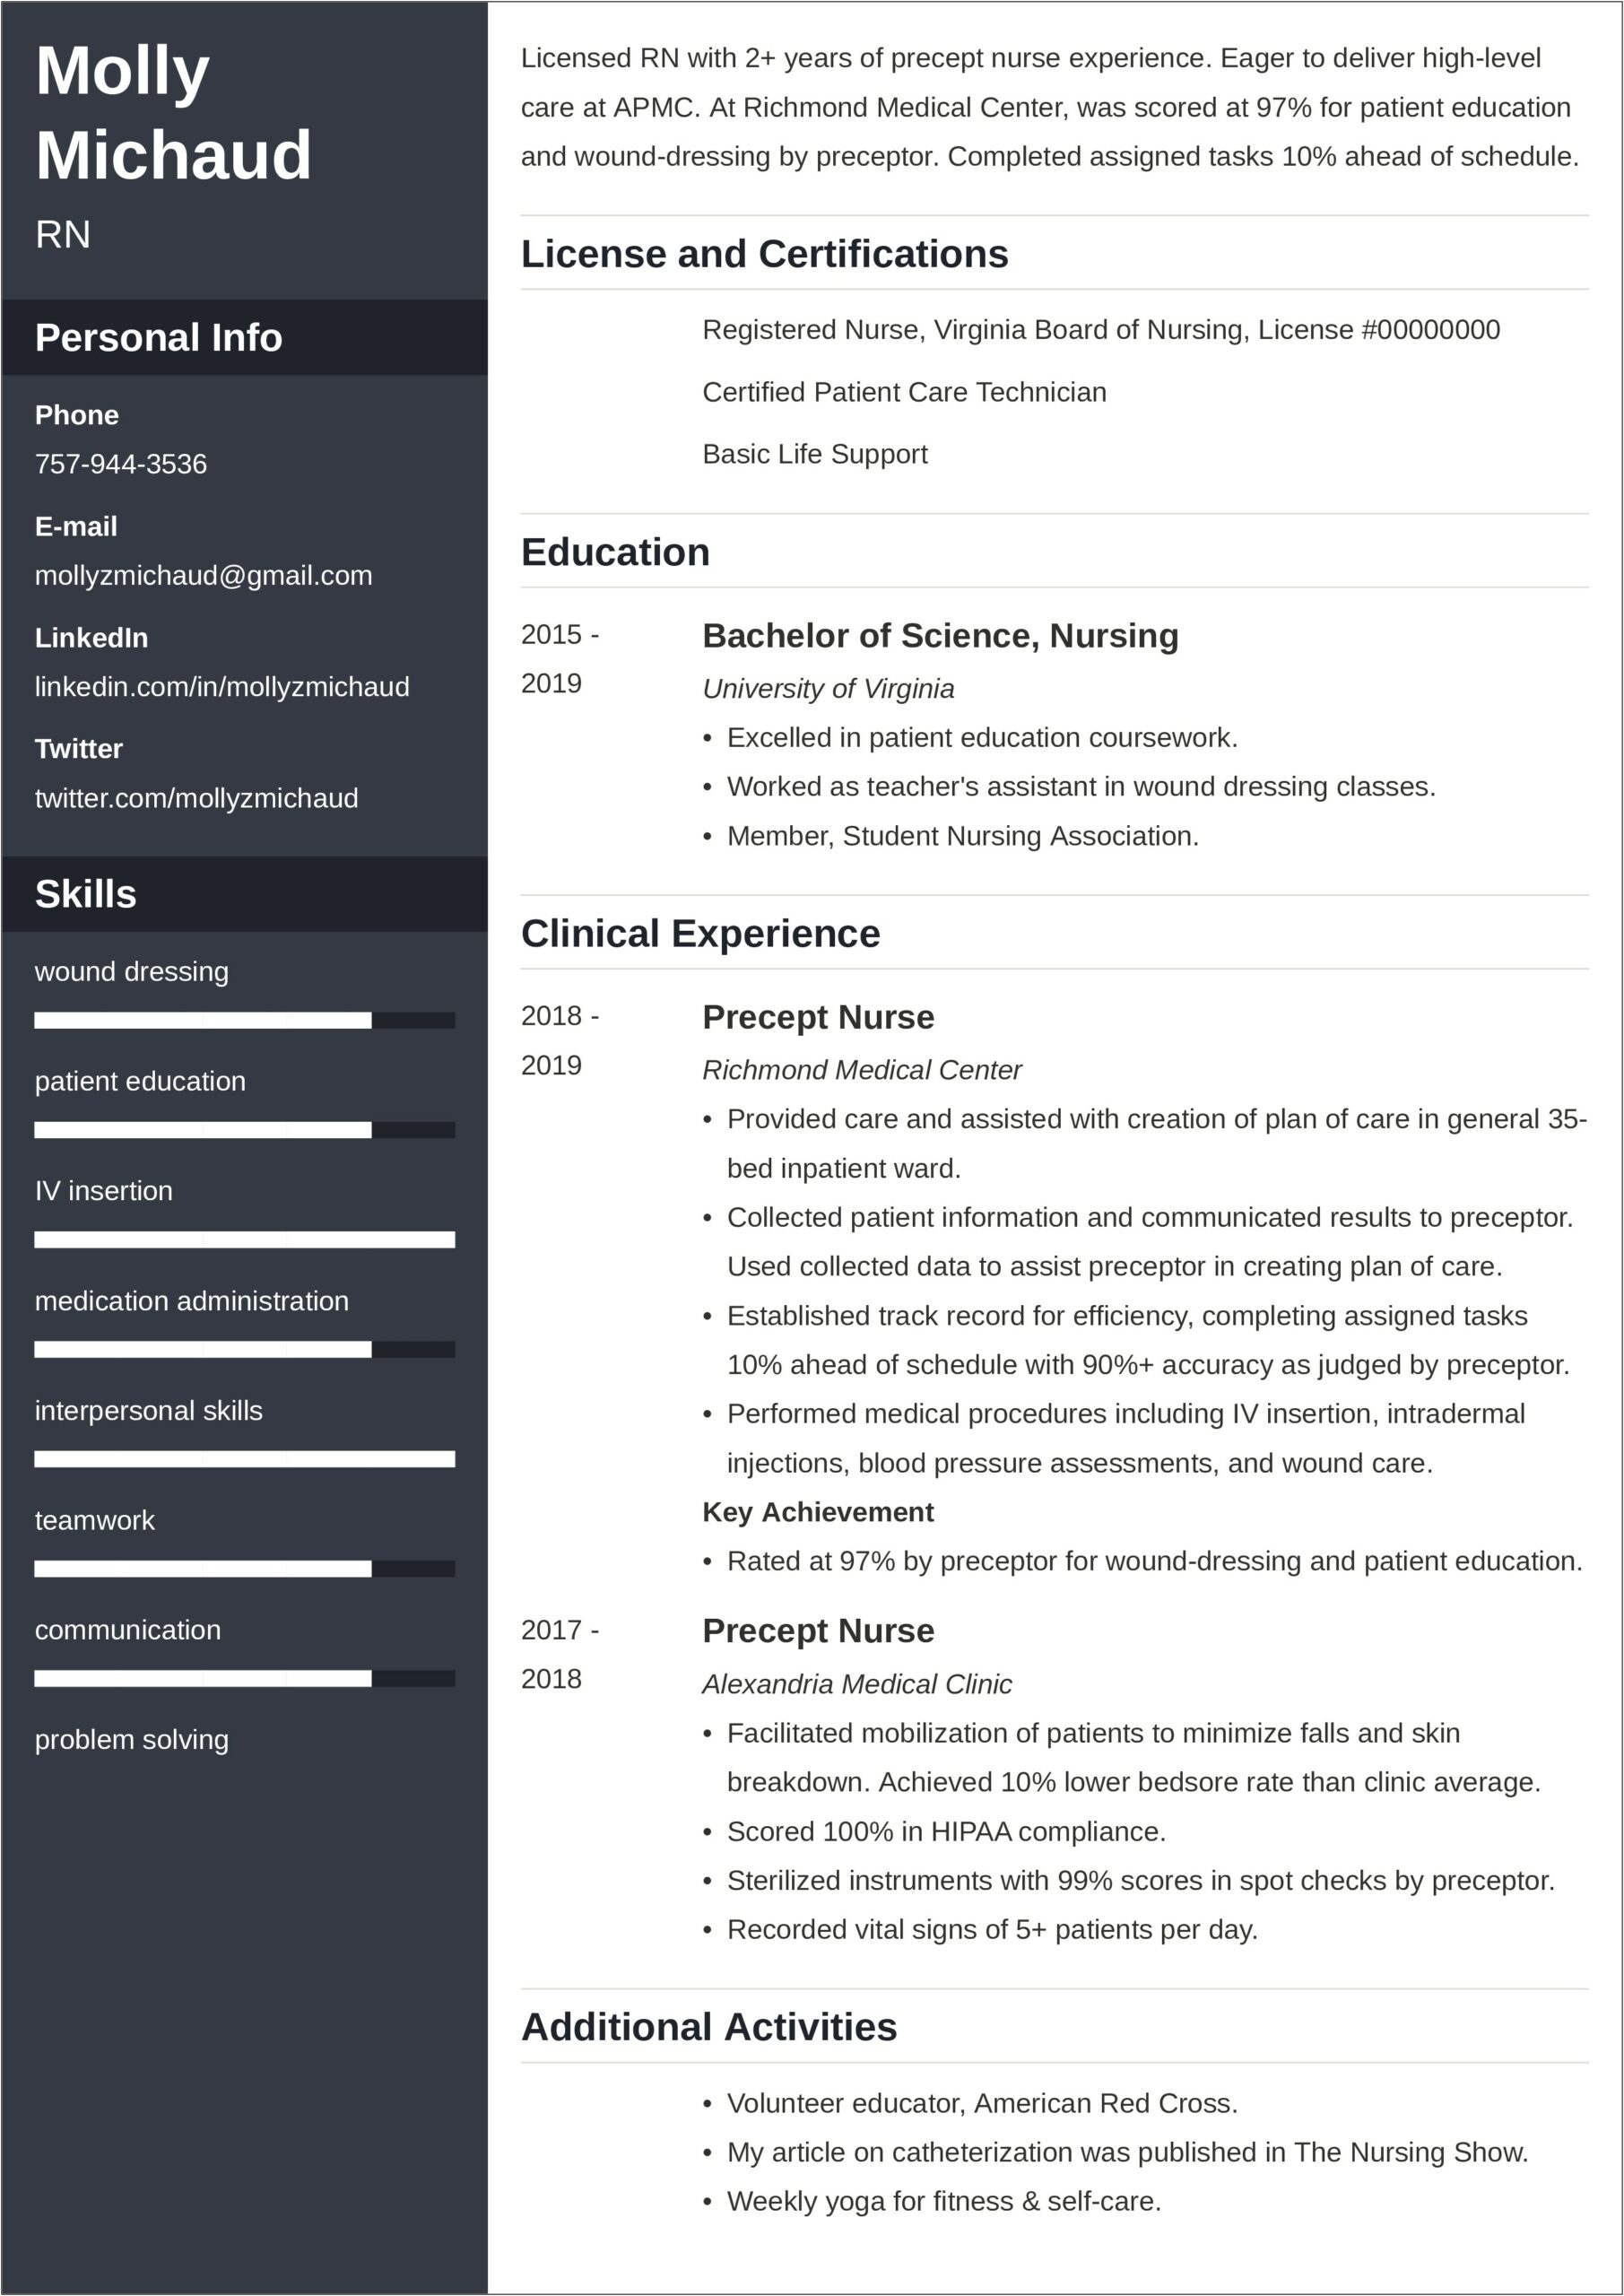 Skills For New Grad Nursing Resume